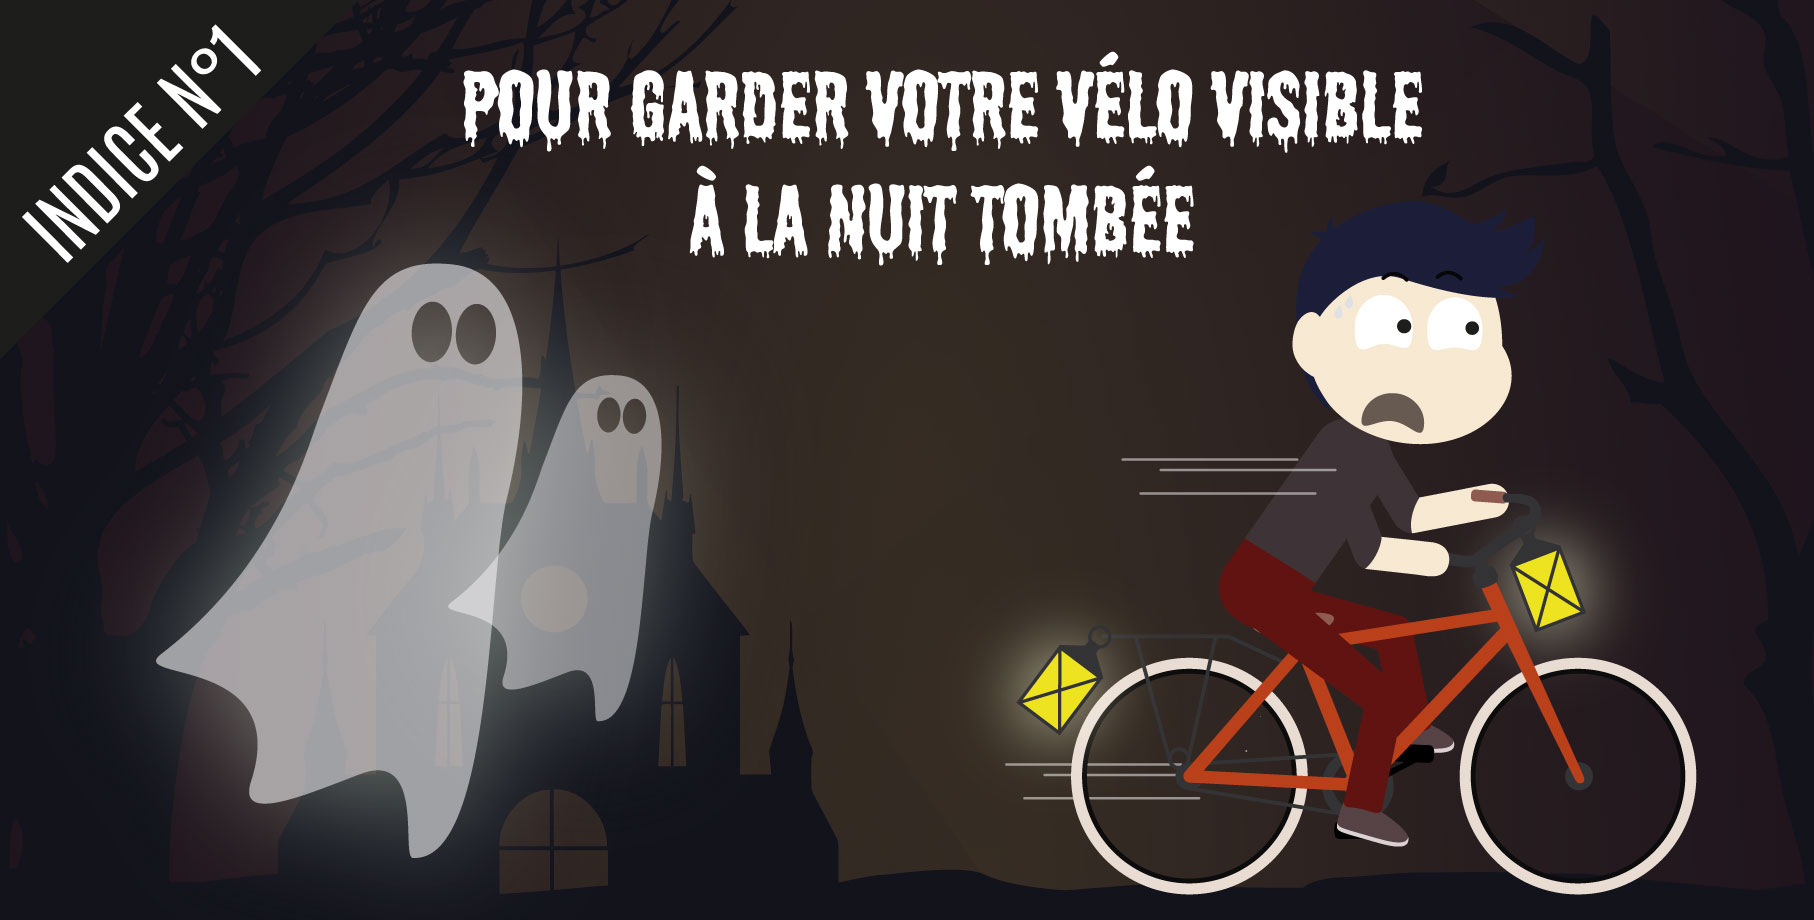 Indice 1 pour retrouver une citrouille : Pour garder votre vélo visible à la nuit tombée